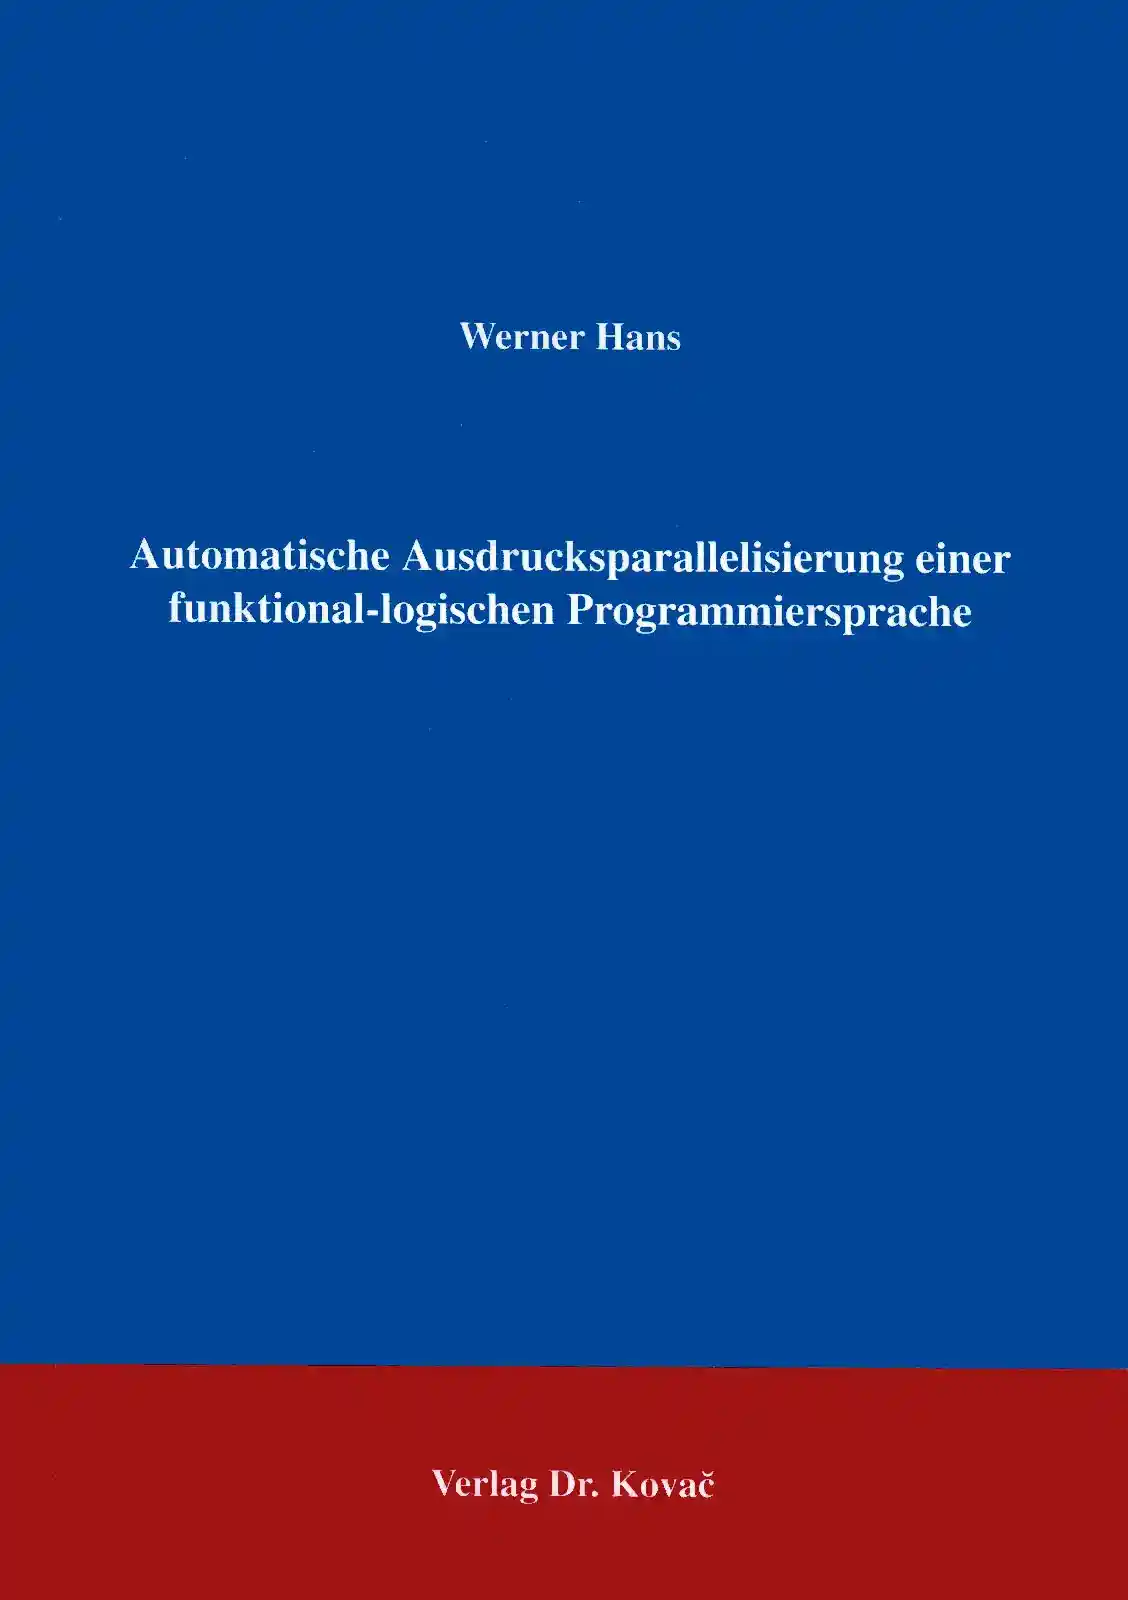  Forschungsarbeit: Automatische Ausdrucksparallelisierung einer funktionallogischen Programmiersprache